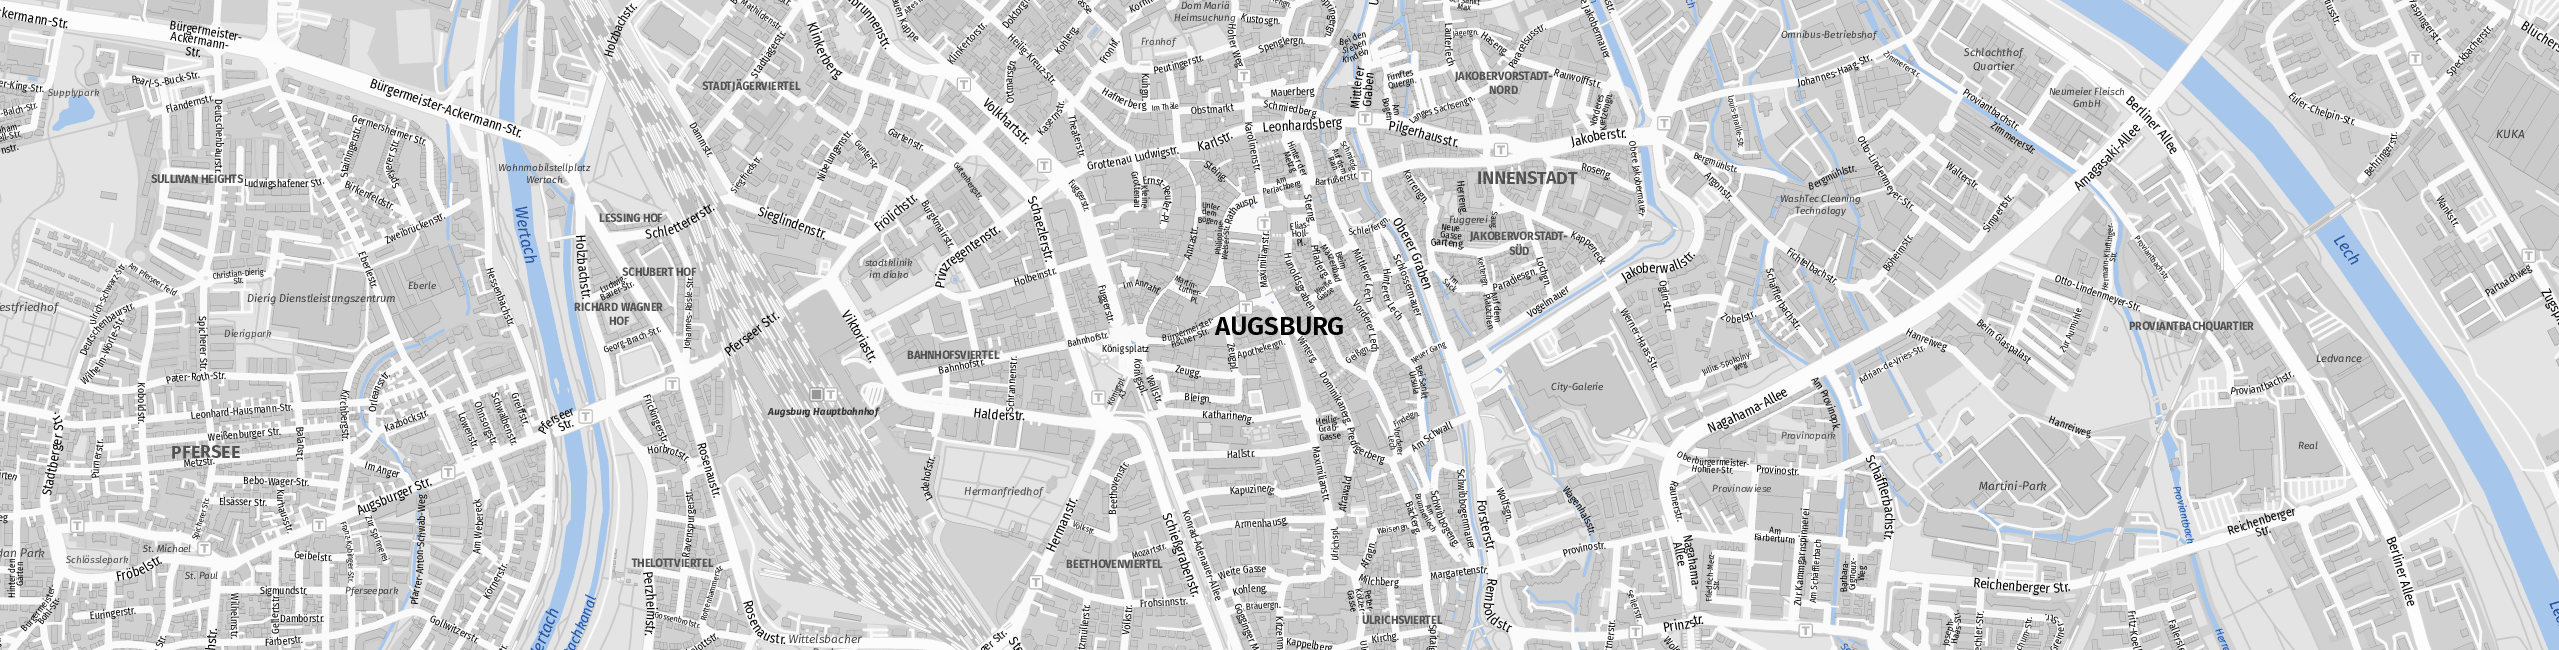 Stadtplan Augsburg zum Downloaden.